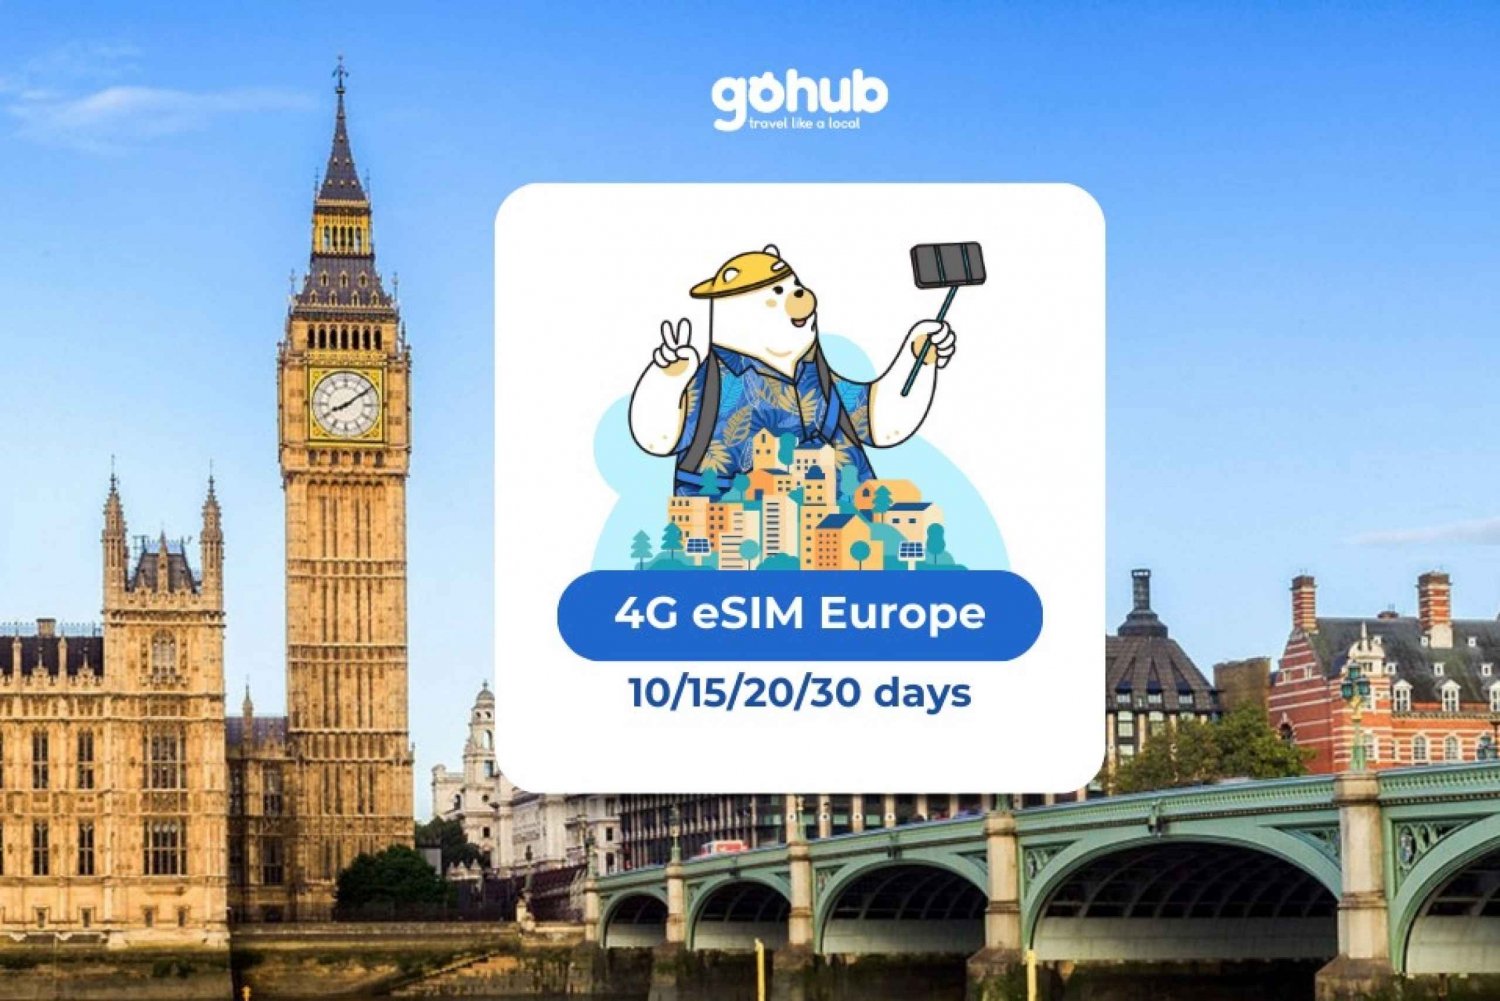 Eurooppa: eSIM Mobile Data (33 maata) - 10/15/20/30 päivää